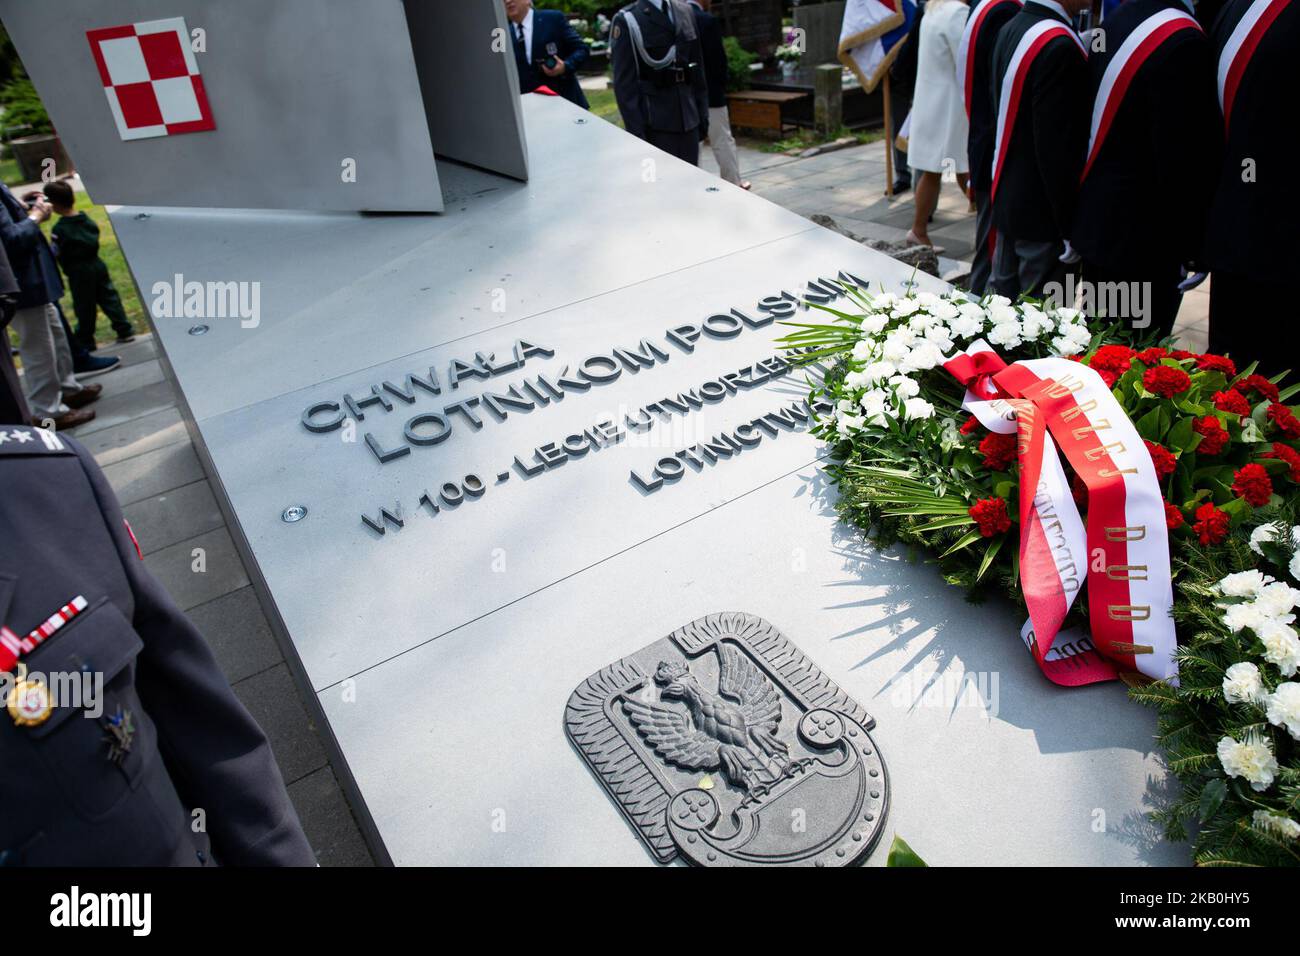 Cérémonie de dévoilement du monument « gloire aux pilotes polonais » lors de la Journée de l'aviation polonaise au cimetière militaire de Powazki à Varsovie, Pologne, le 28 août 2018 (photo de Mateusz Wlodarczyk/NurPhoto) Banque D'Images